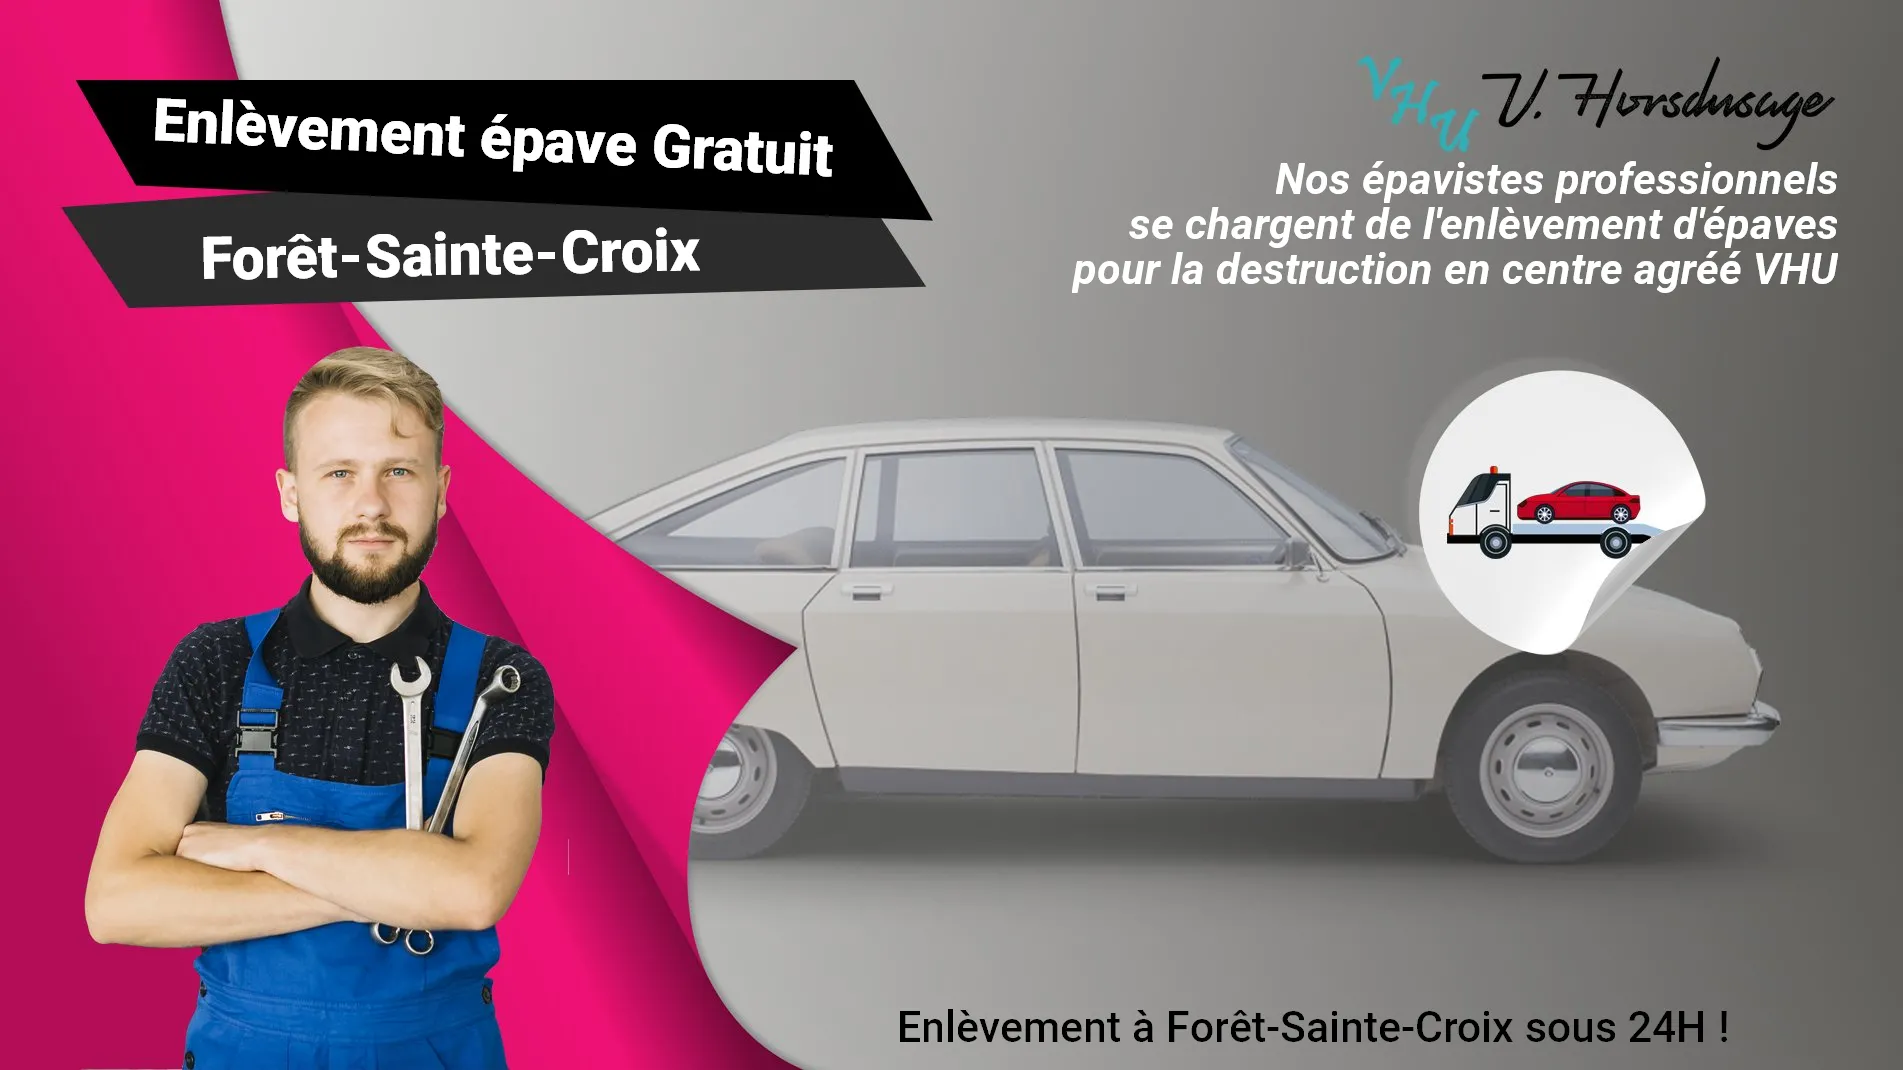 Pour un enlèvement gratuit à Forêt-Sainte-Croix, contactez nos épavistes agréé VHU